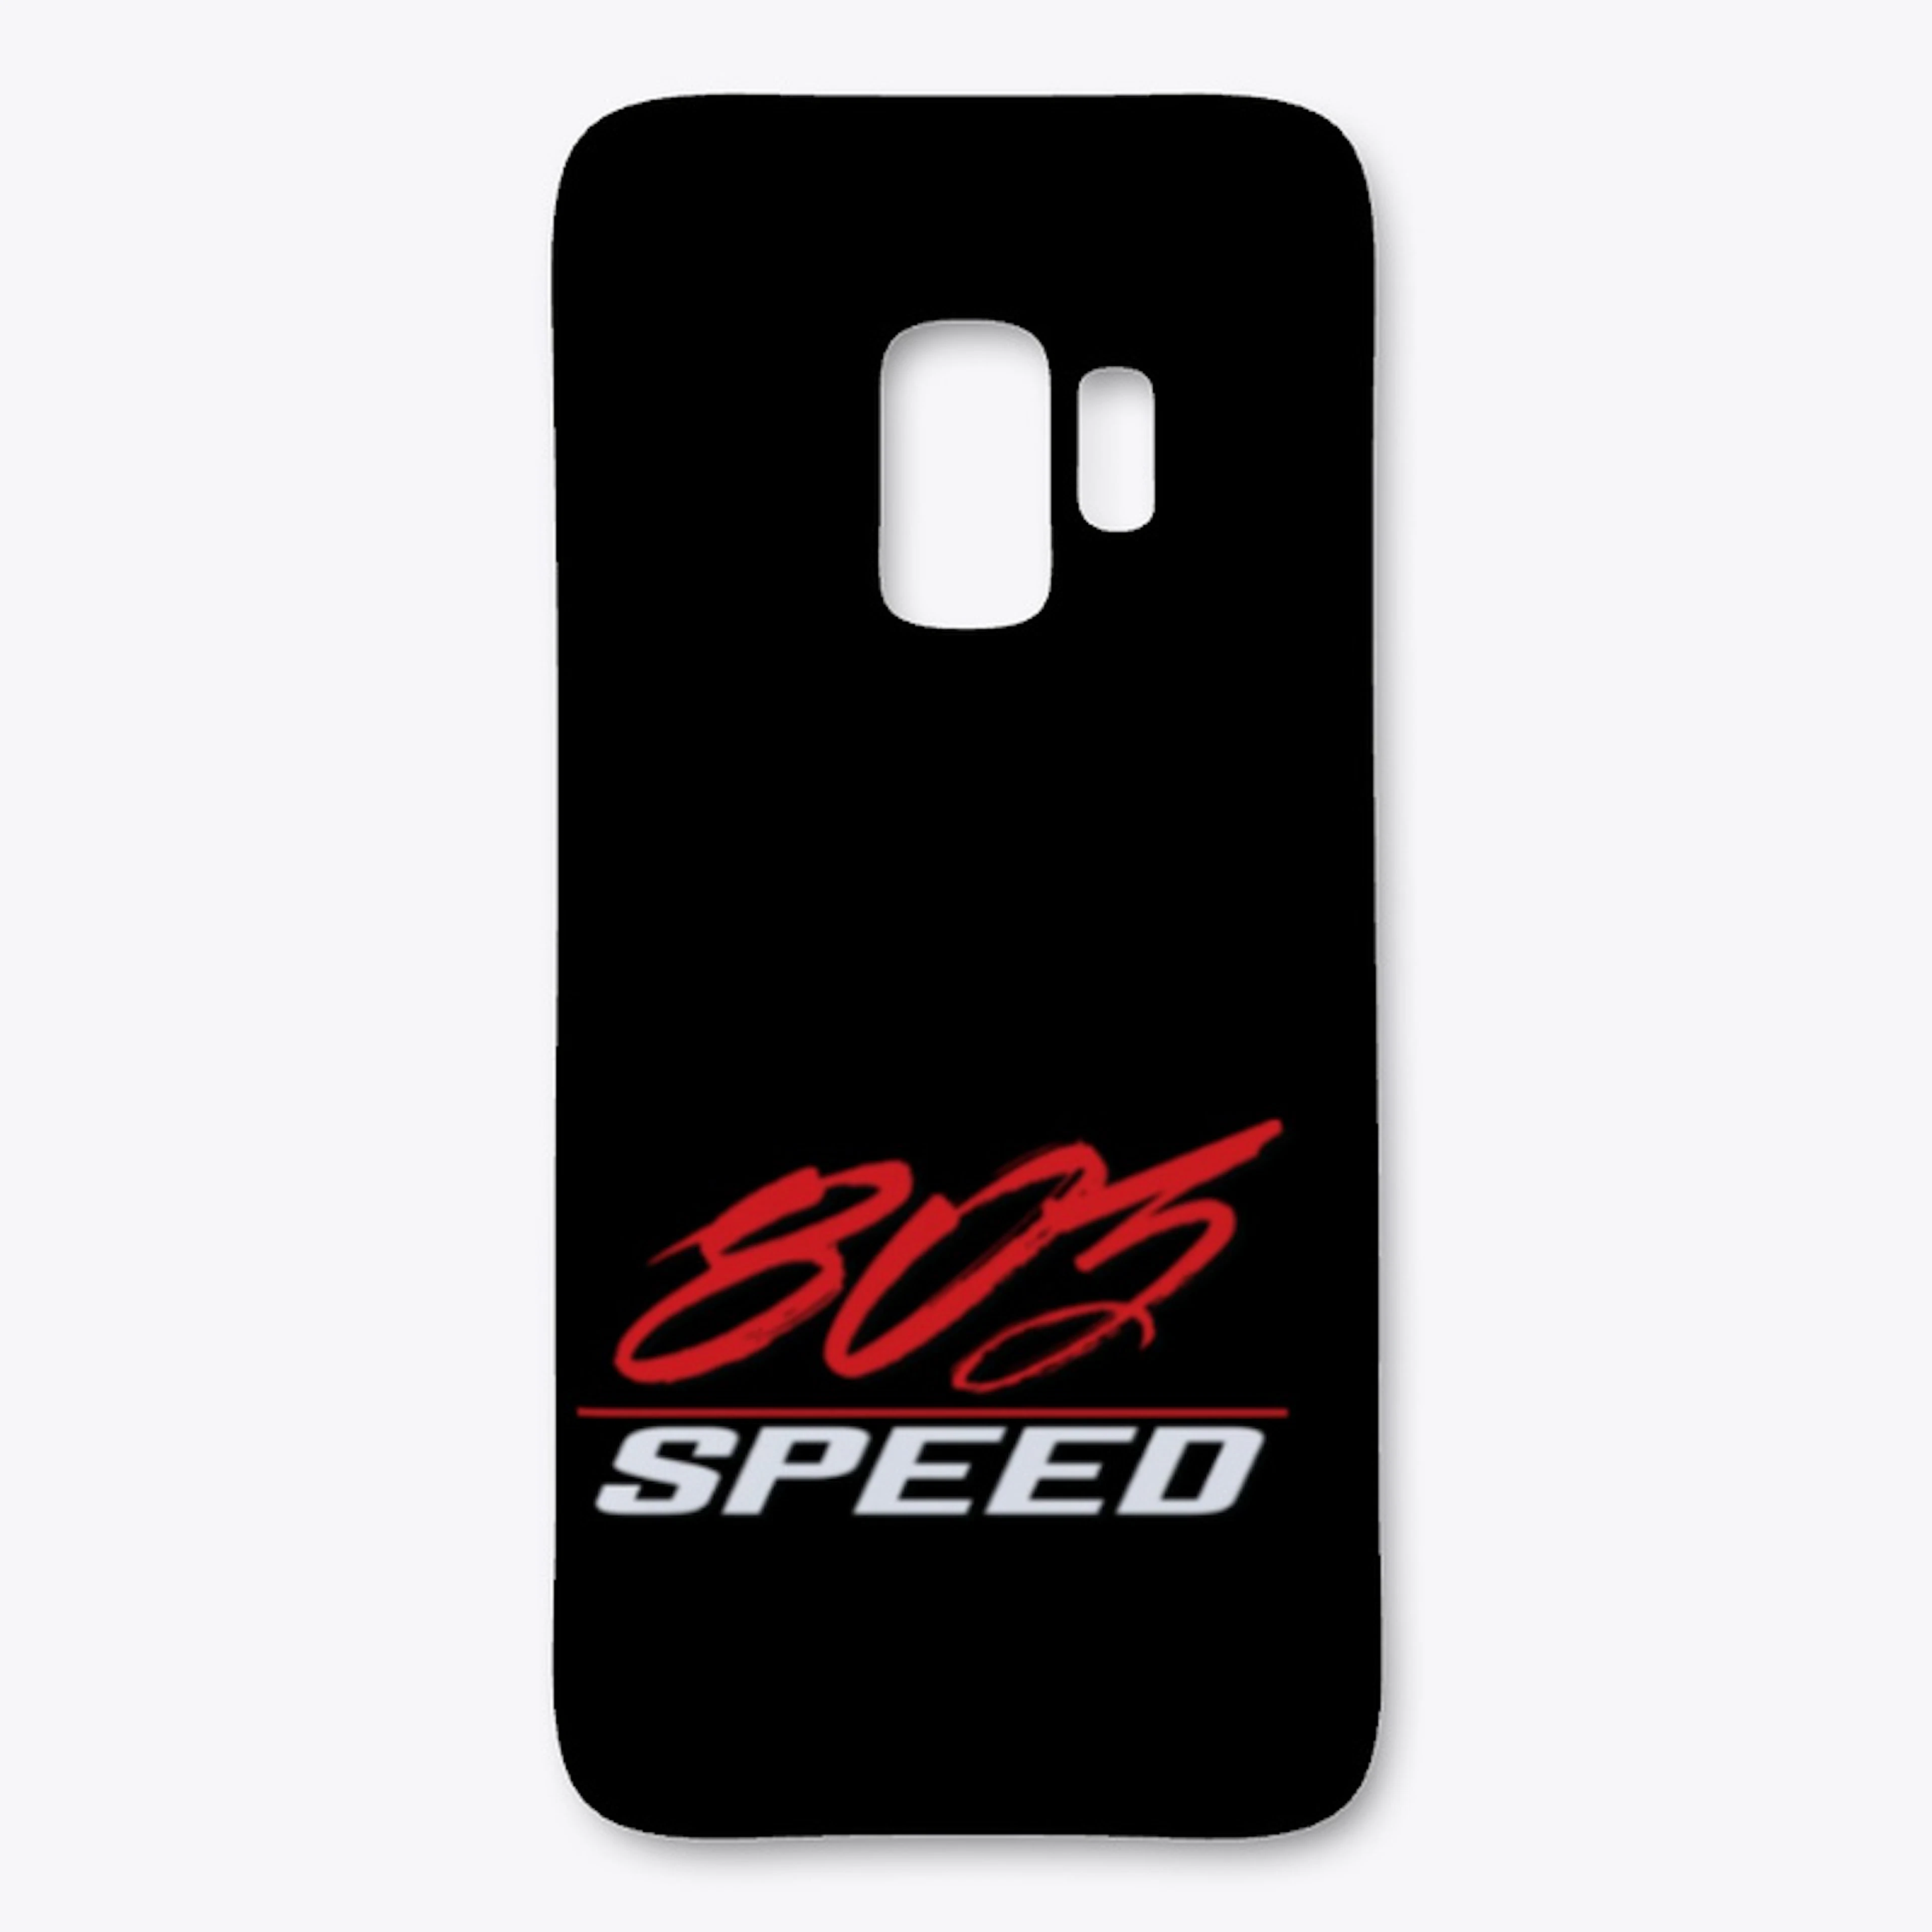 803 Speed Samsung Cases